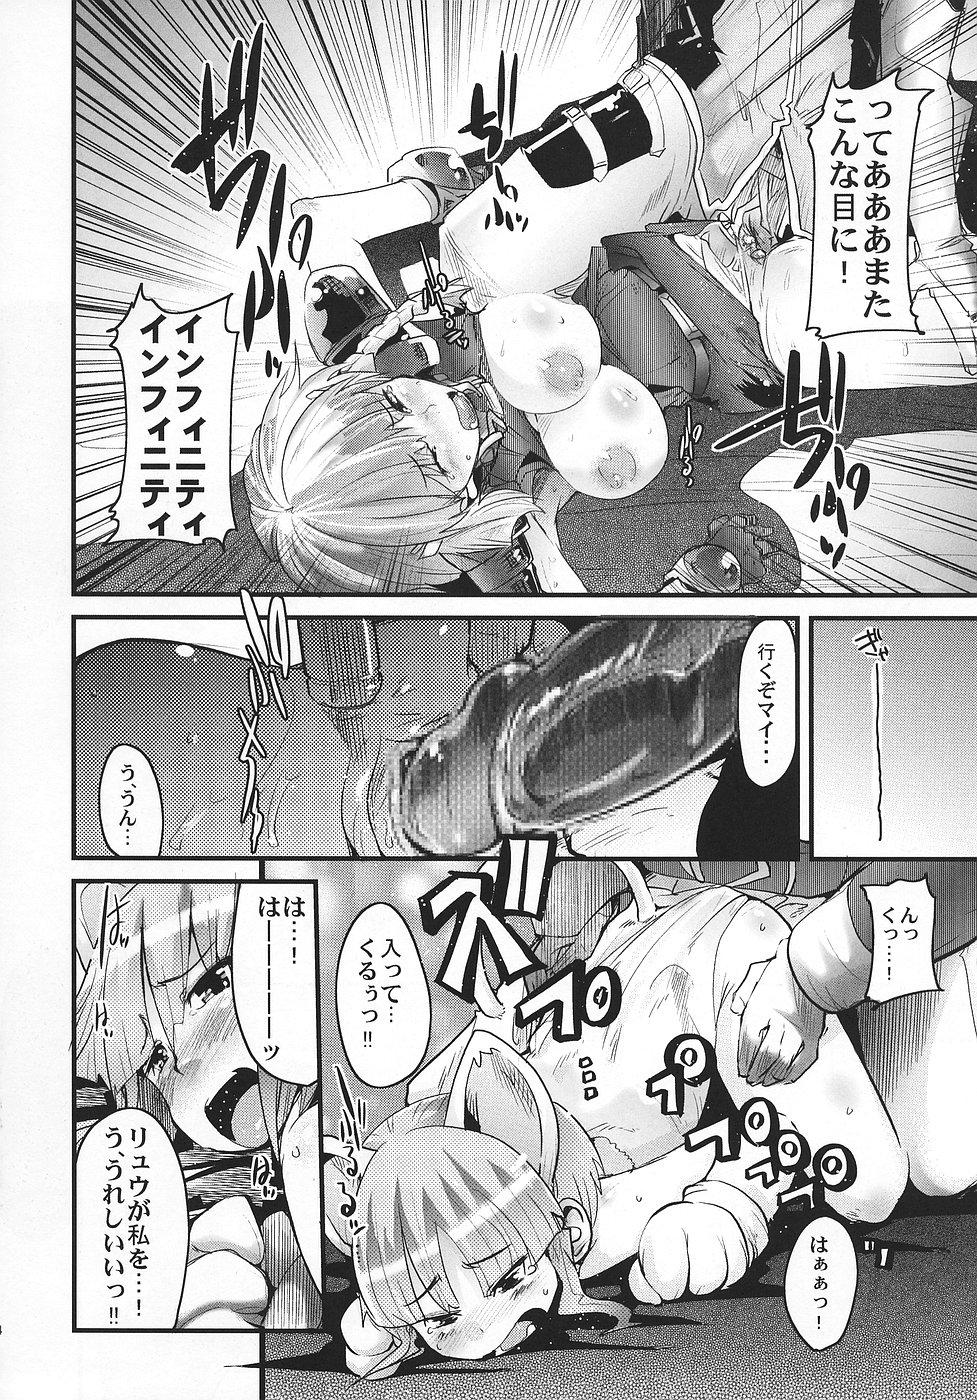 Lez Boku no Watashi no Super Bobobbo Taisen OGS - Super robot wars Milfporn - Page 13